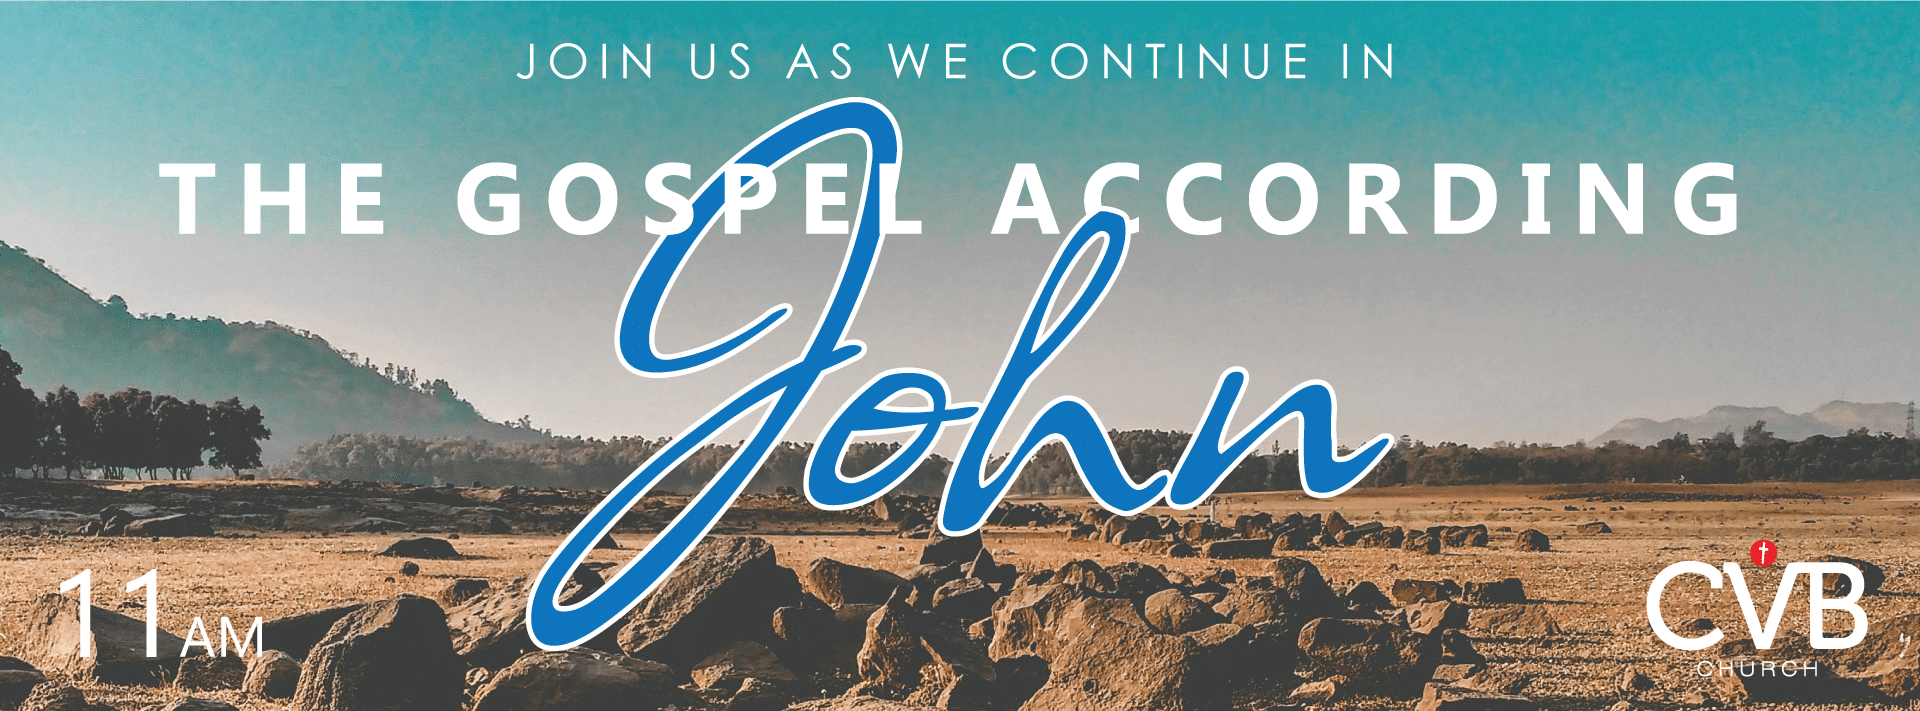 Gospel According to John | CVB Church | Cascade, Idaho